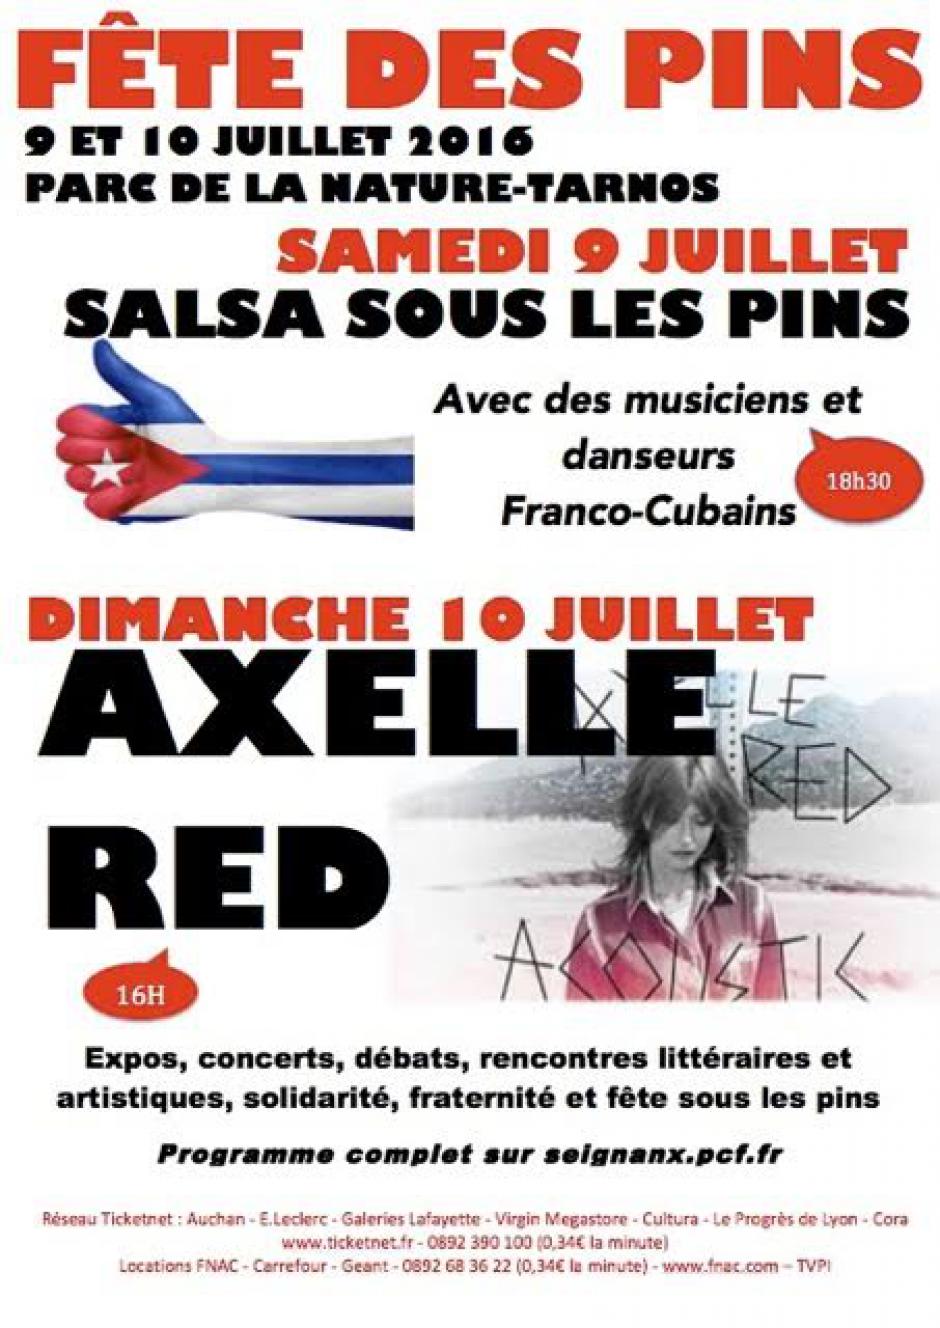 SALSA FRANCO-CUBAINE ET AXEL RED A LA FETE DES PINS 9 ET 10 JUILLET 2016